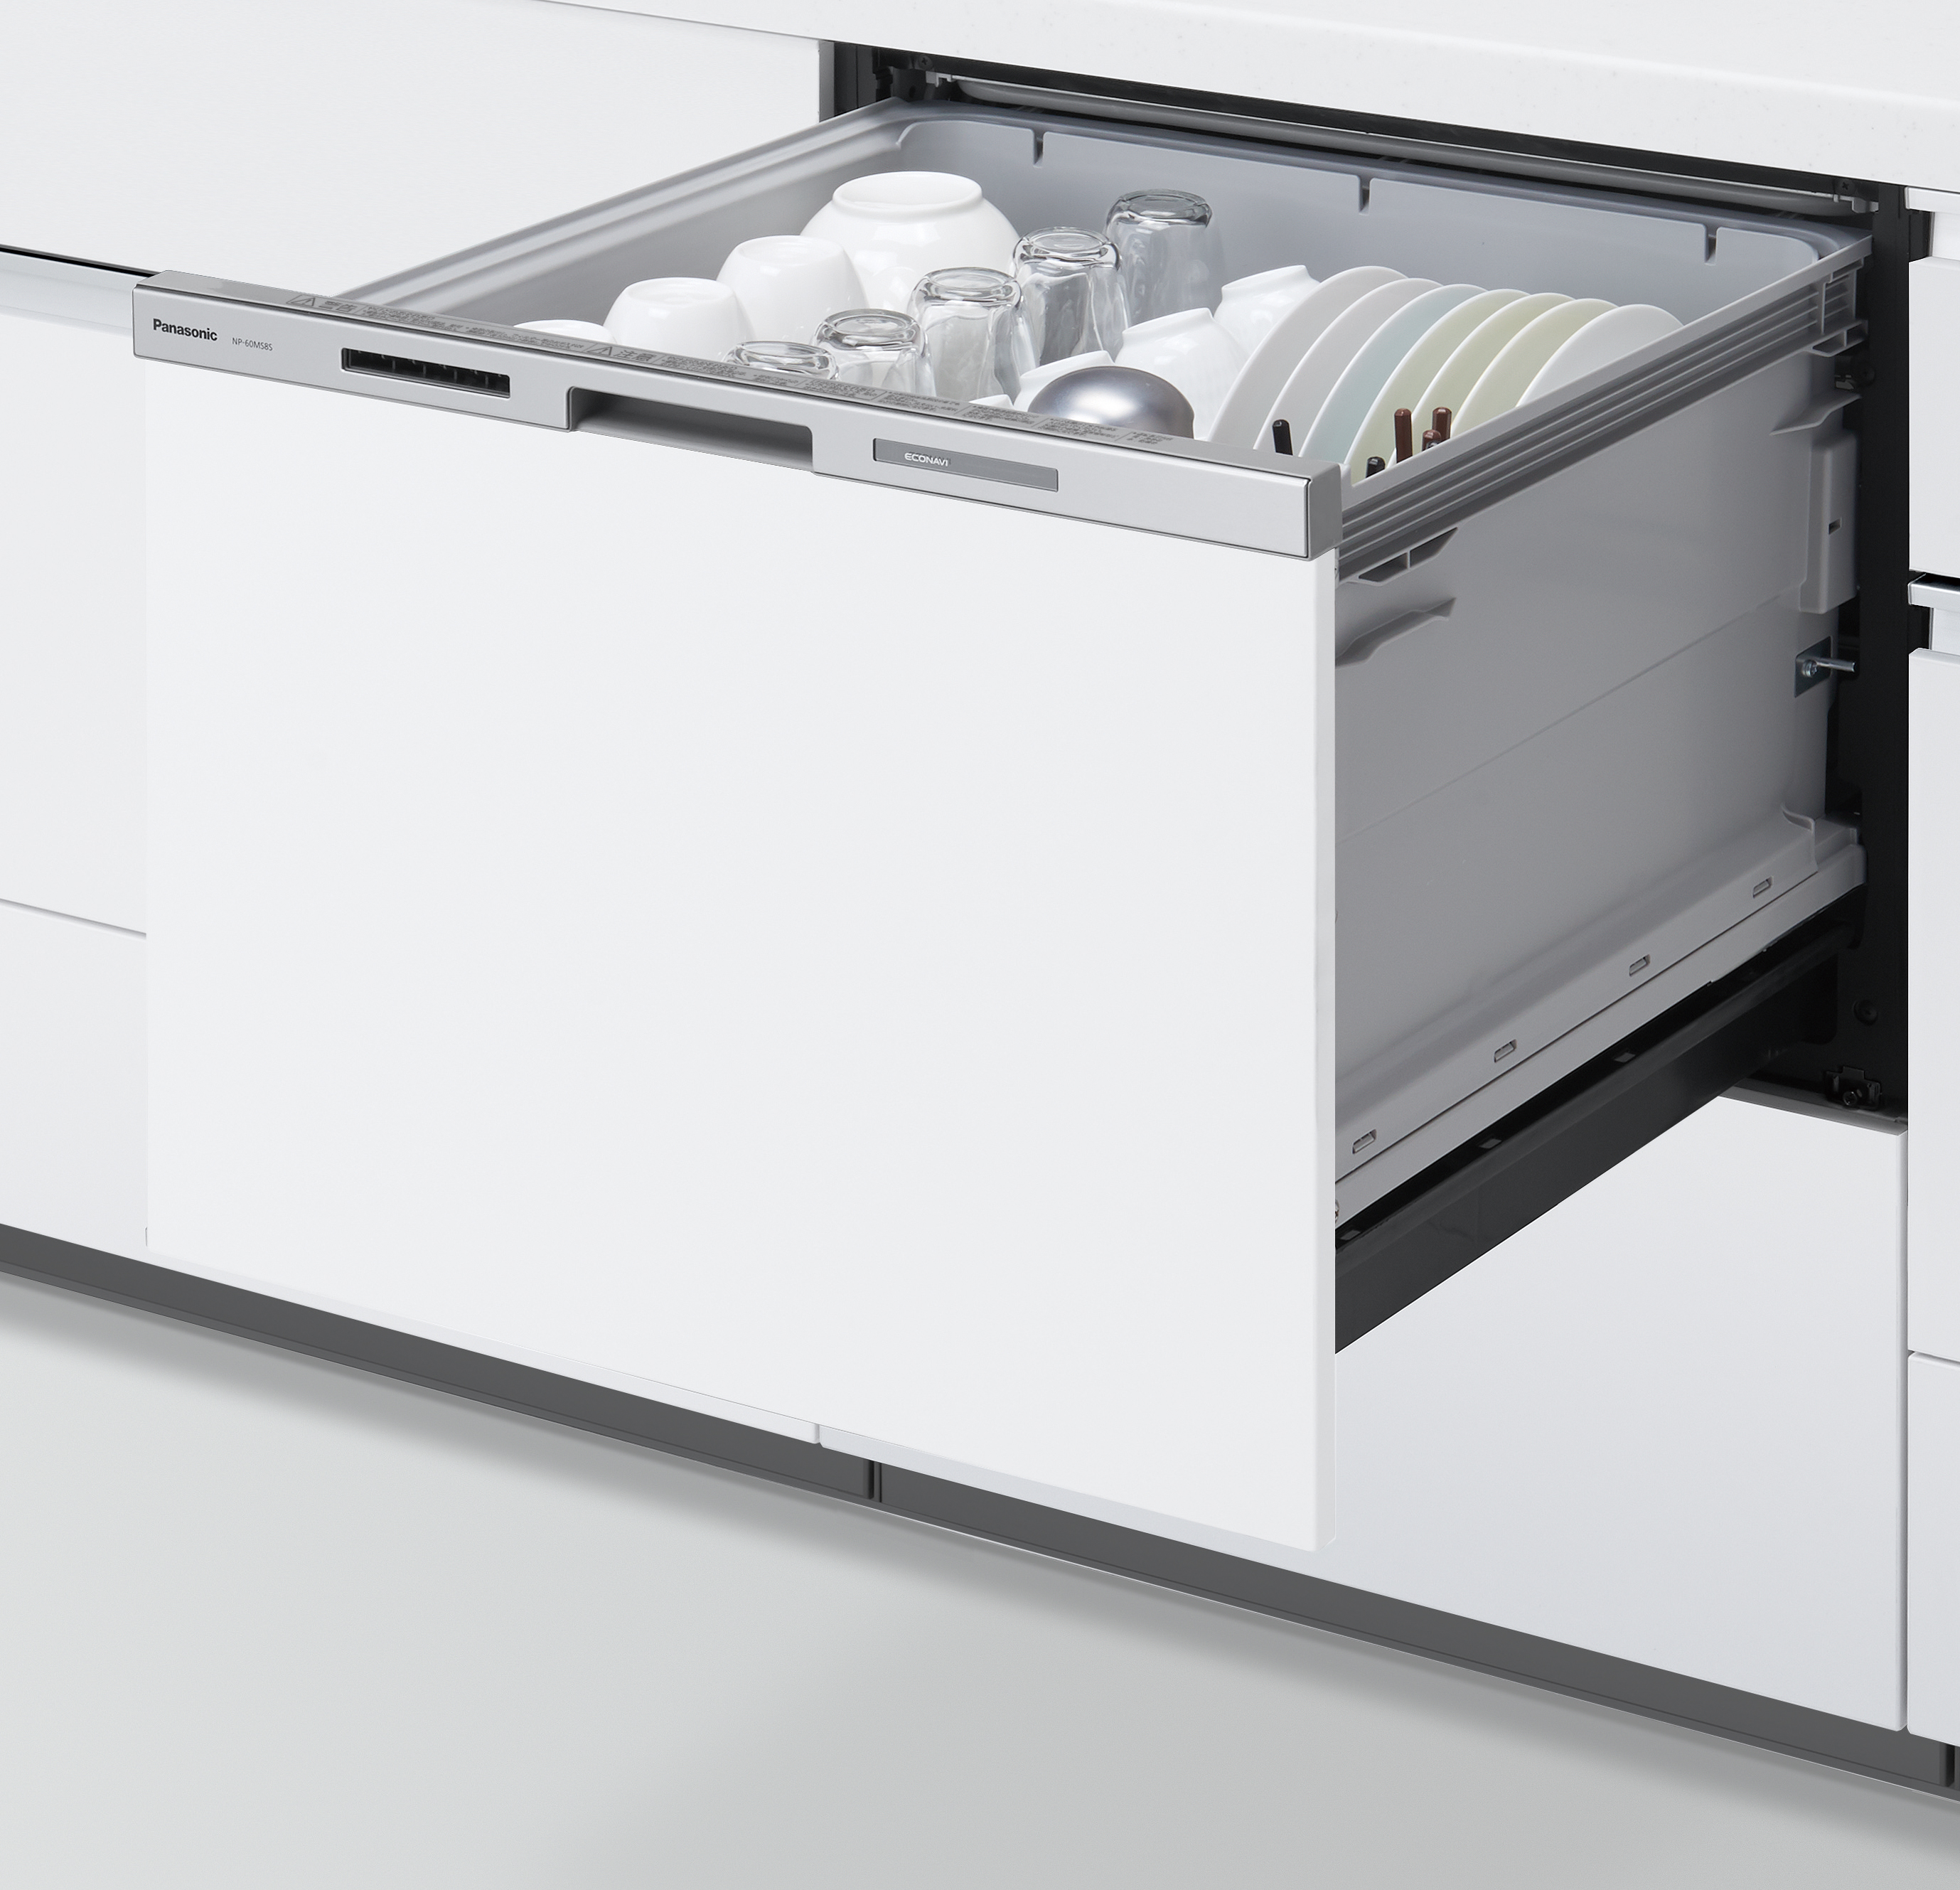 食器洗い乾燥機 パナソニック NP-45MD9S ドアパネル付(ホワイト 